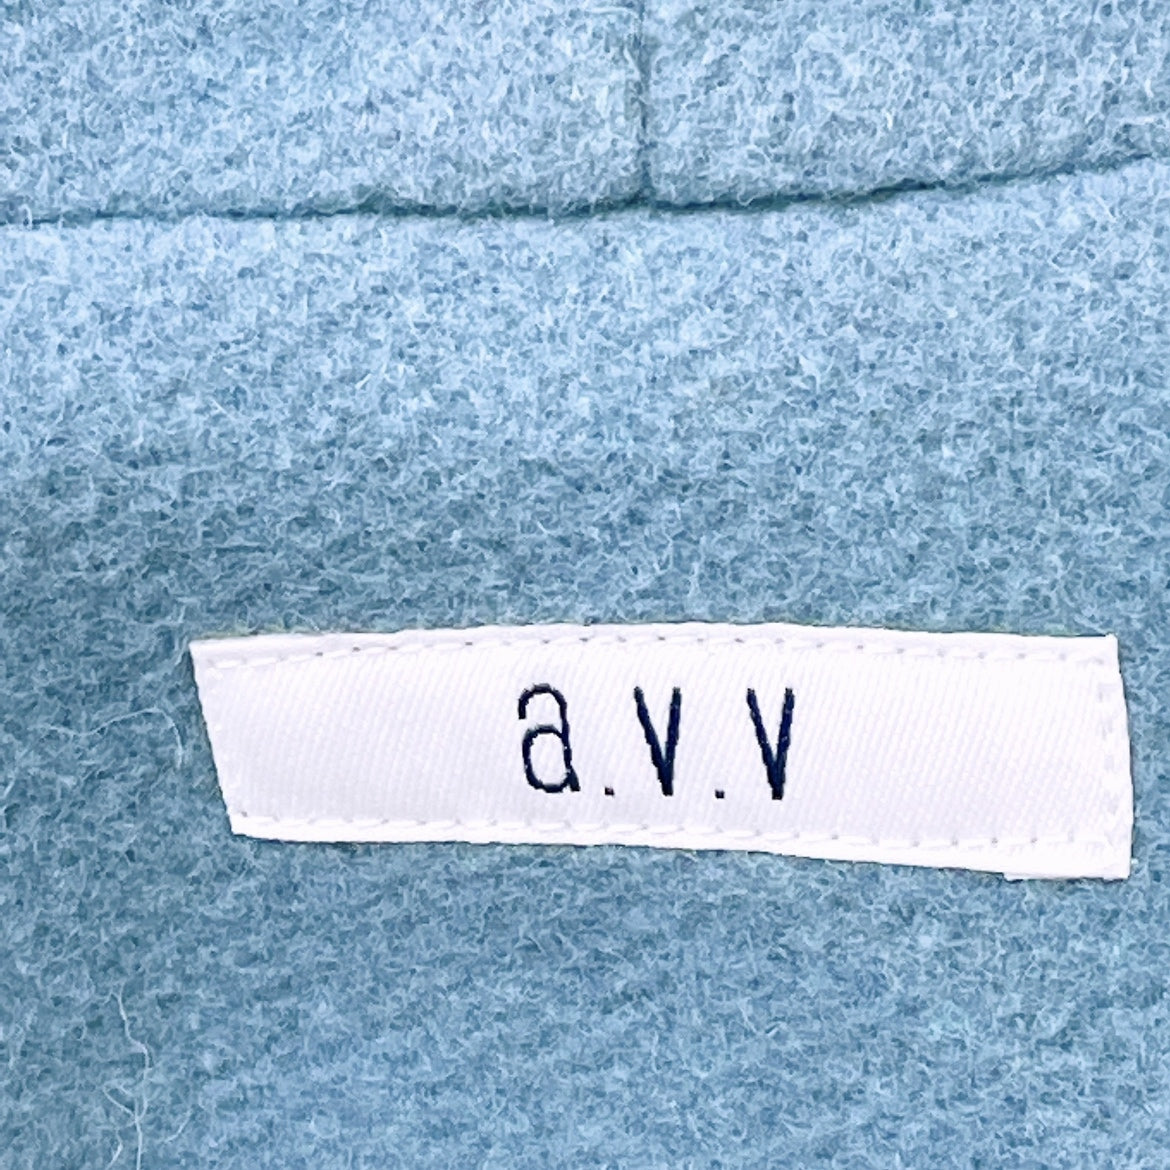 新品 レディースXS a.v.v コート ロング 水色 青 ブルー フード付き タグ付き 未使用 オシャレ 上品 アーヴェヴェ 【14352】